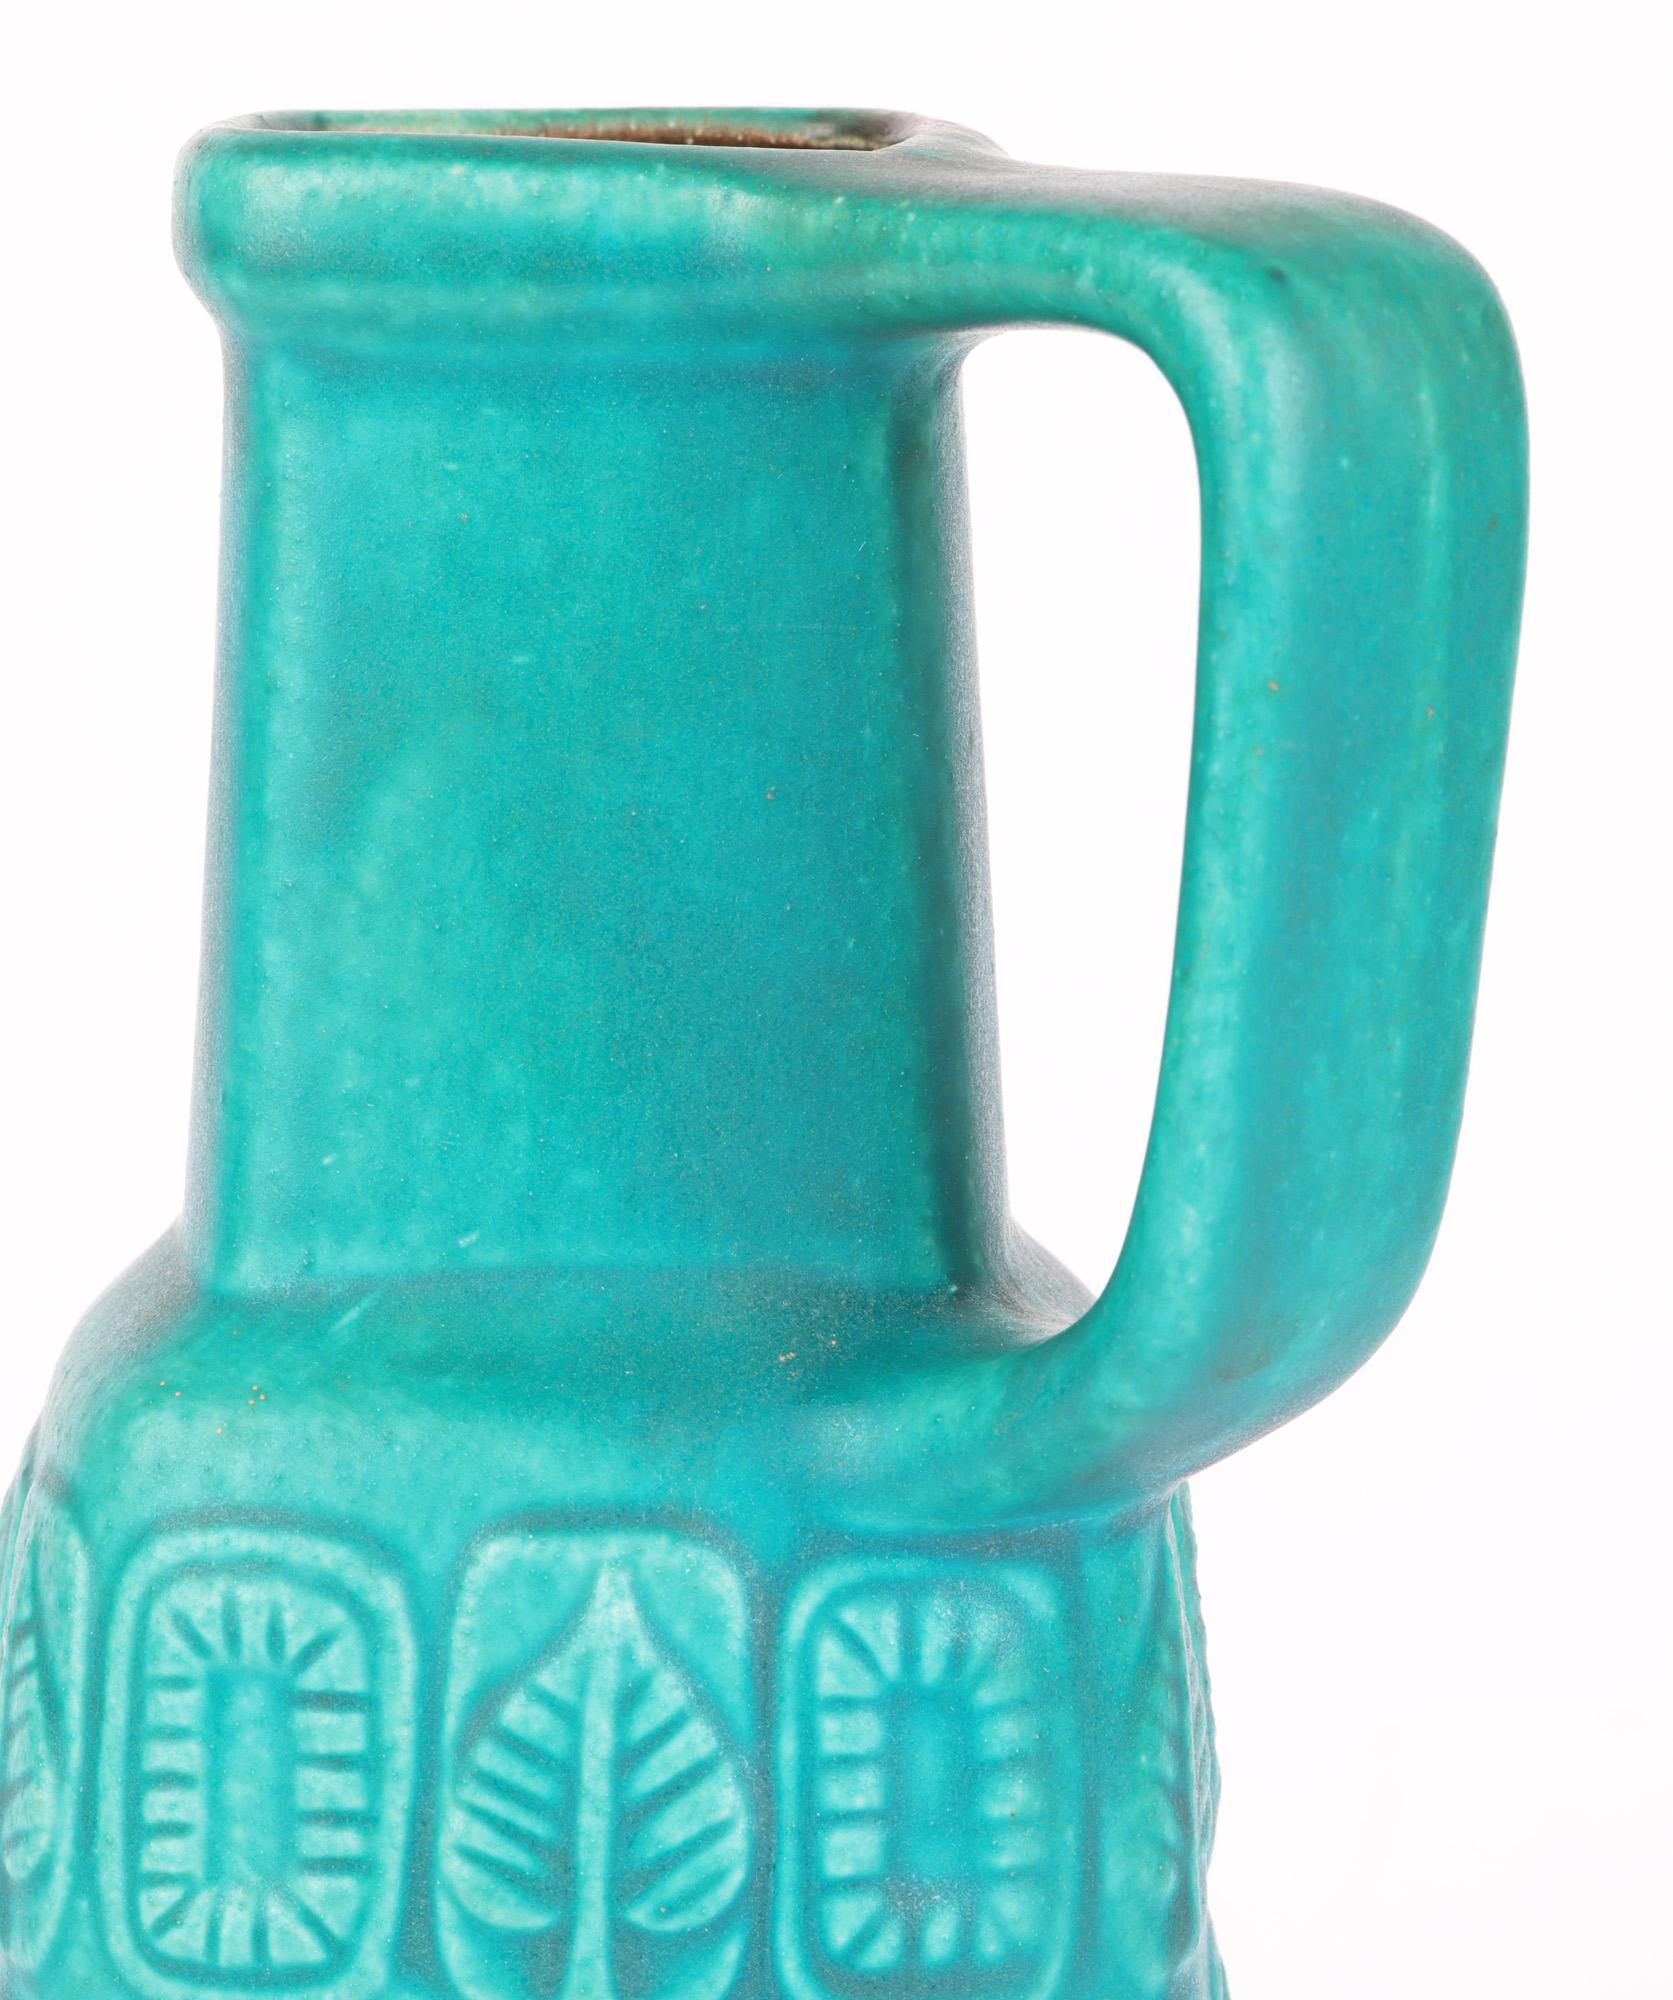 Hand-Painted Bay Keramik German Mid-Century Turquoise Glazed Molded Pottery Vase